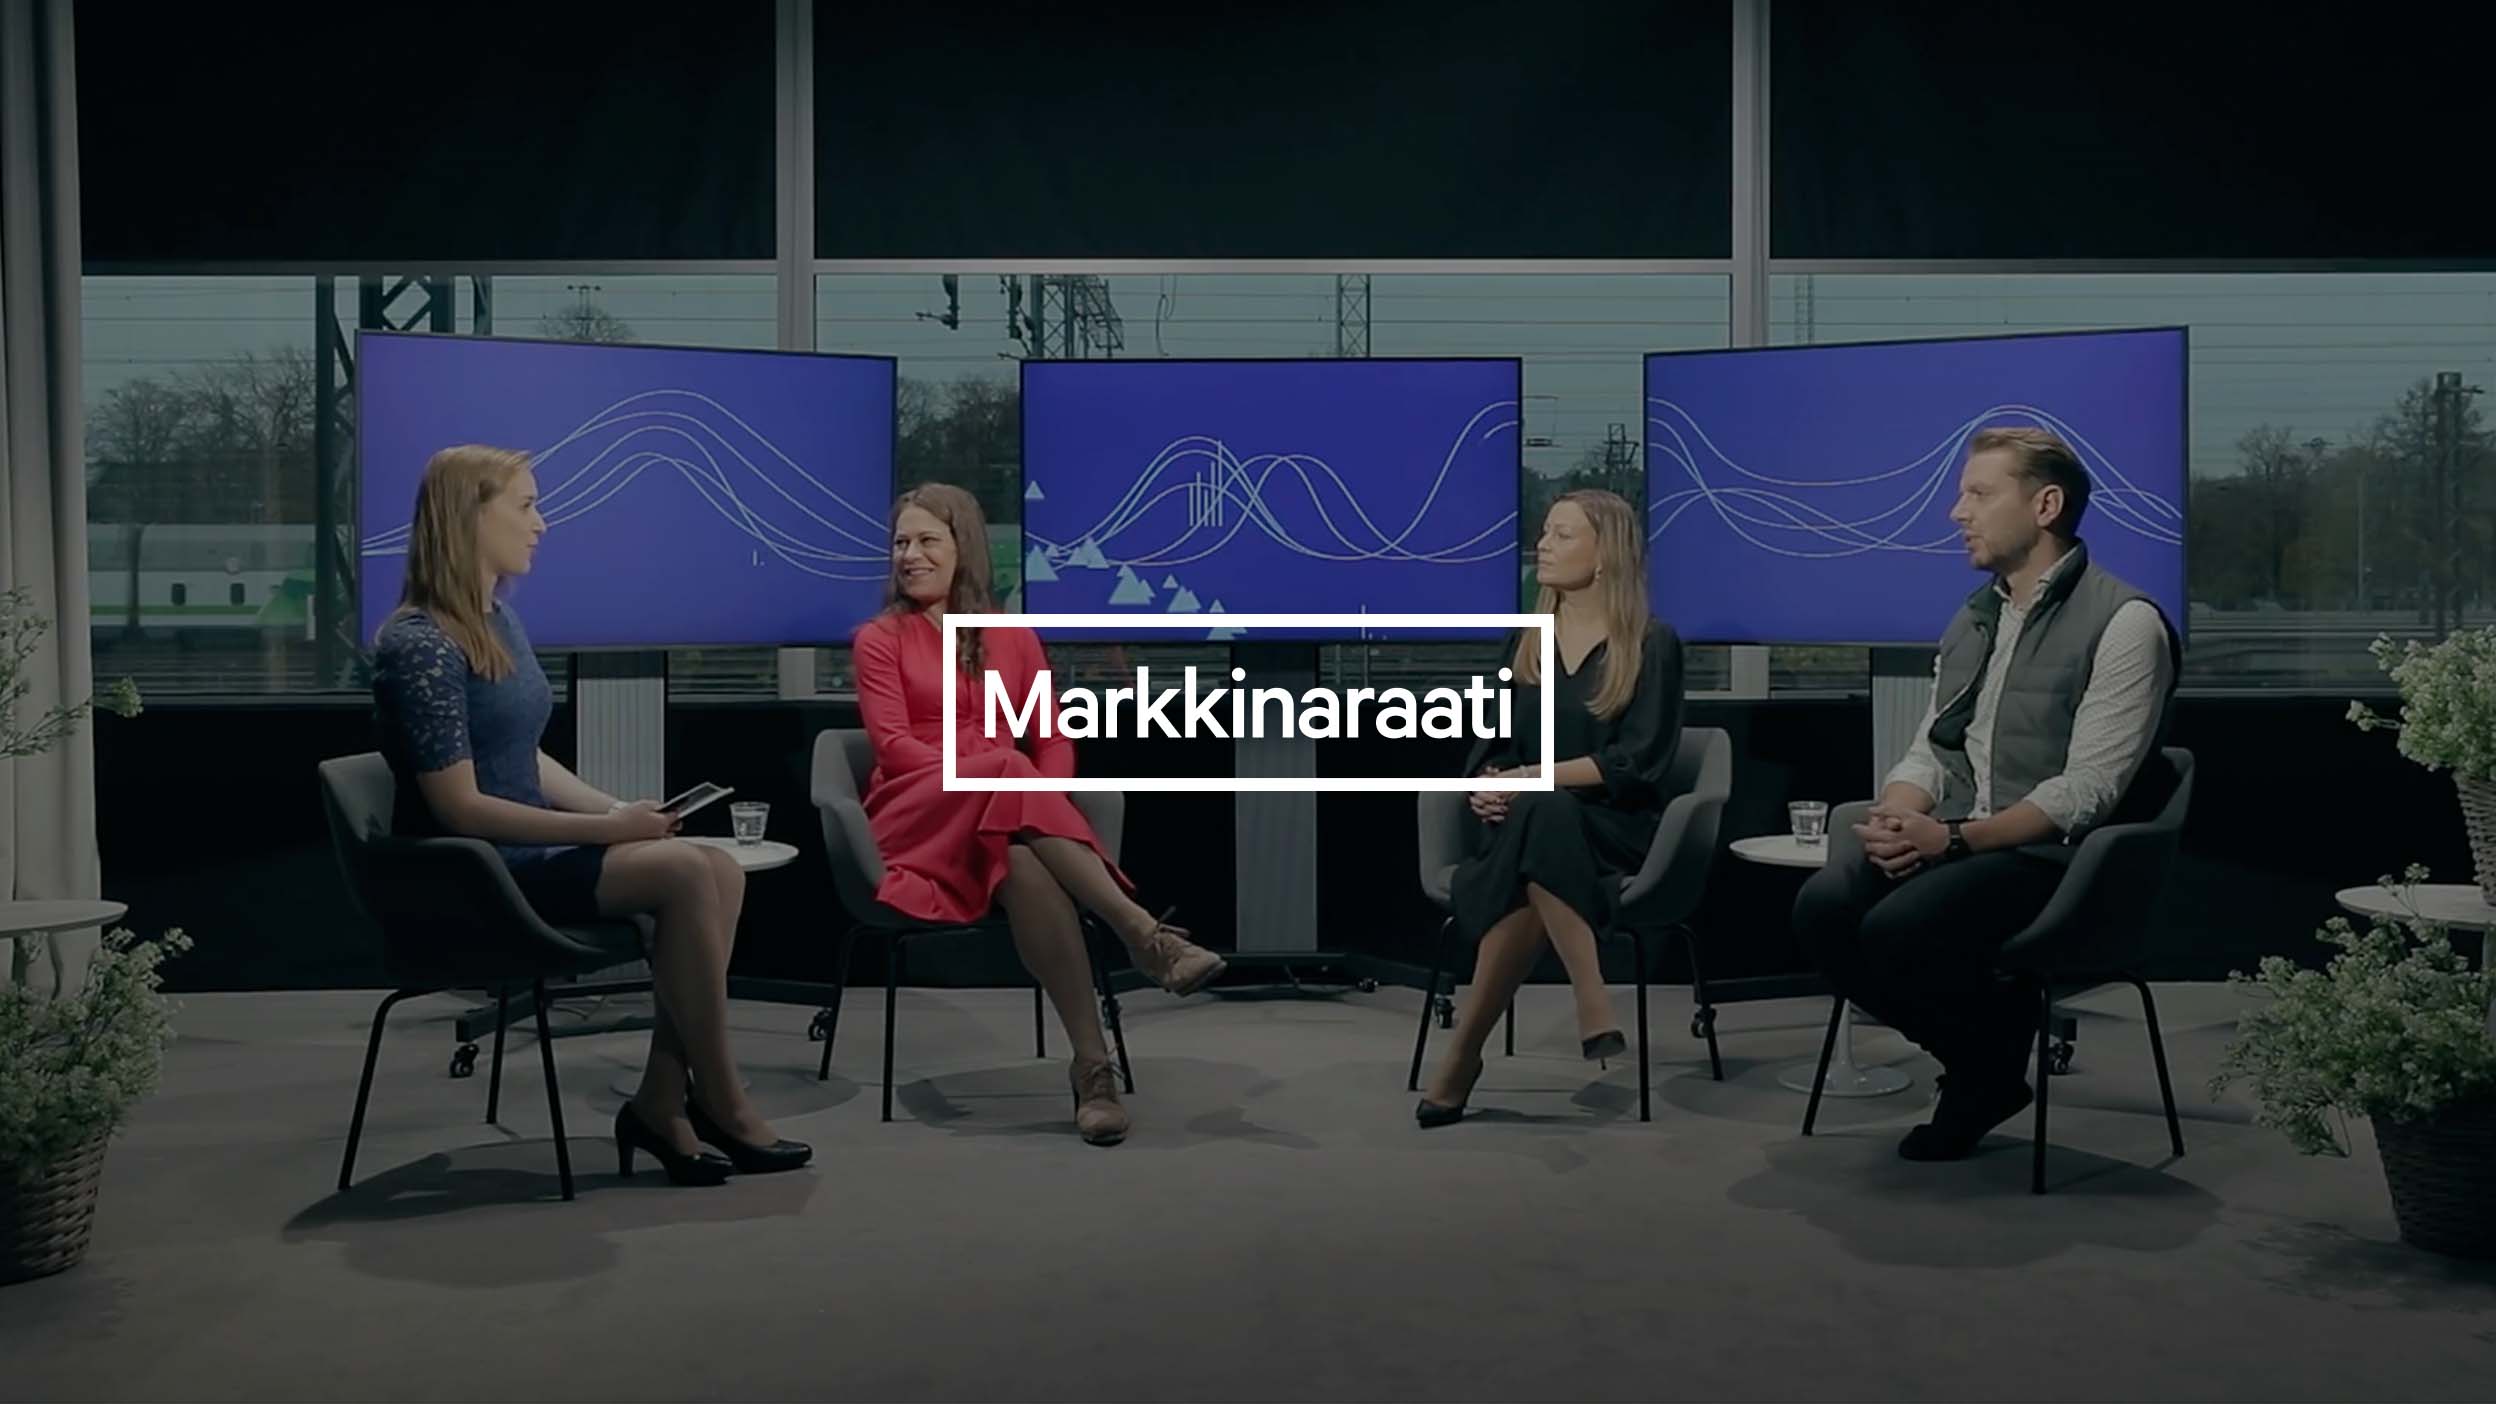 Markkinaraati: Aktiesparkontot är ett av de instrument som erbjuds placerarna